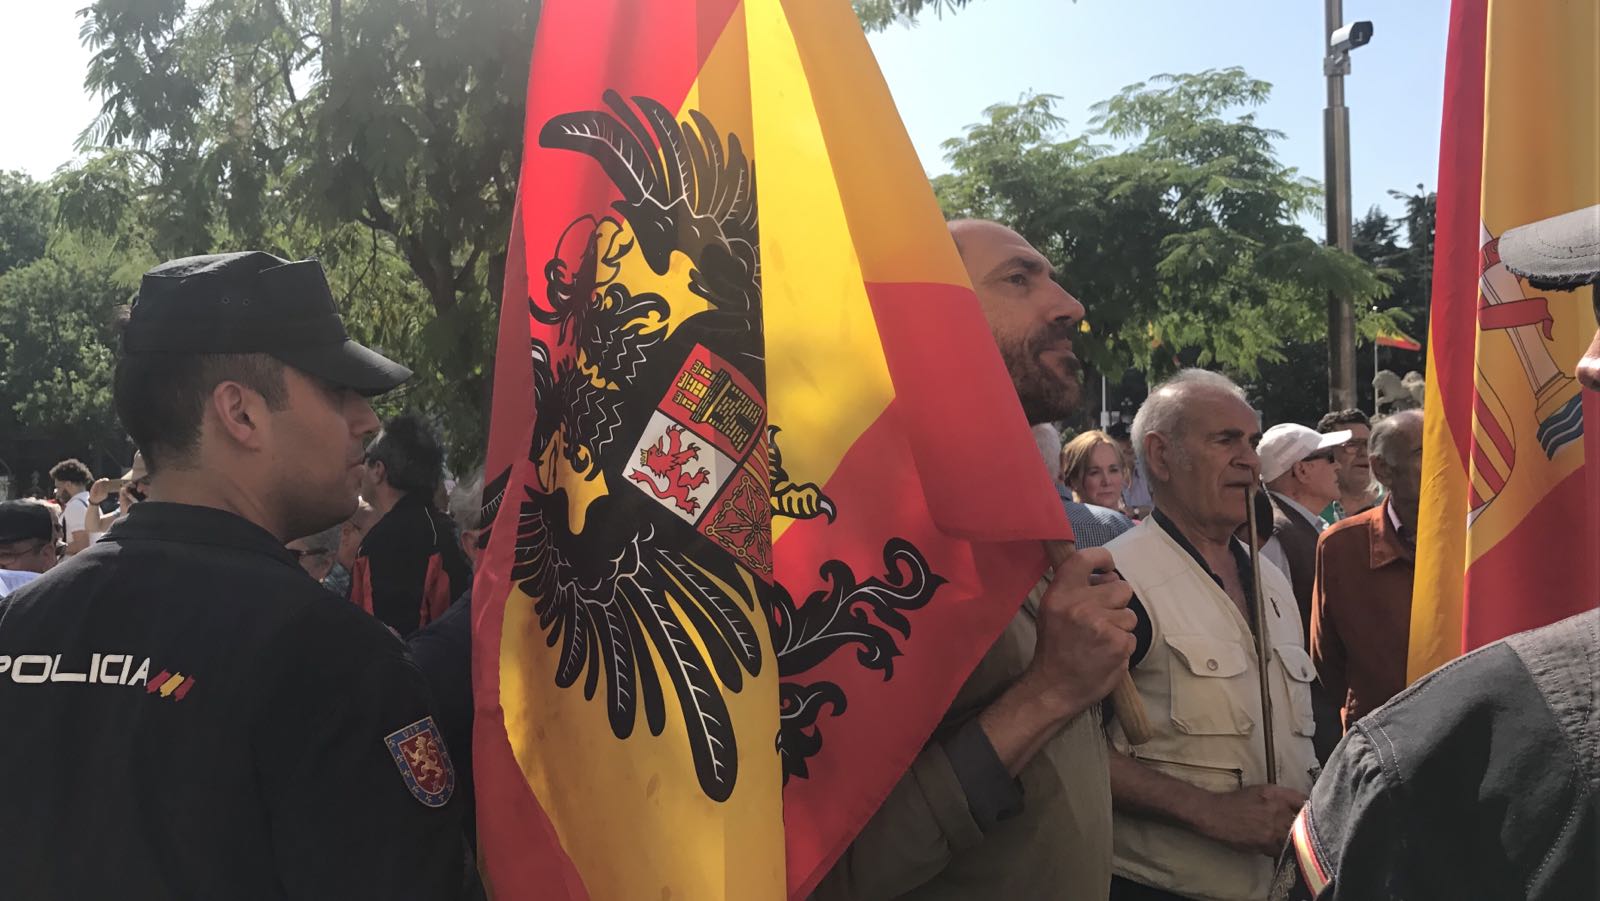 Vídeo: Crits de "separatistes terroristes" a la manifestació de la Falange contra Puigdemont